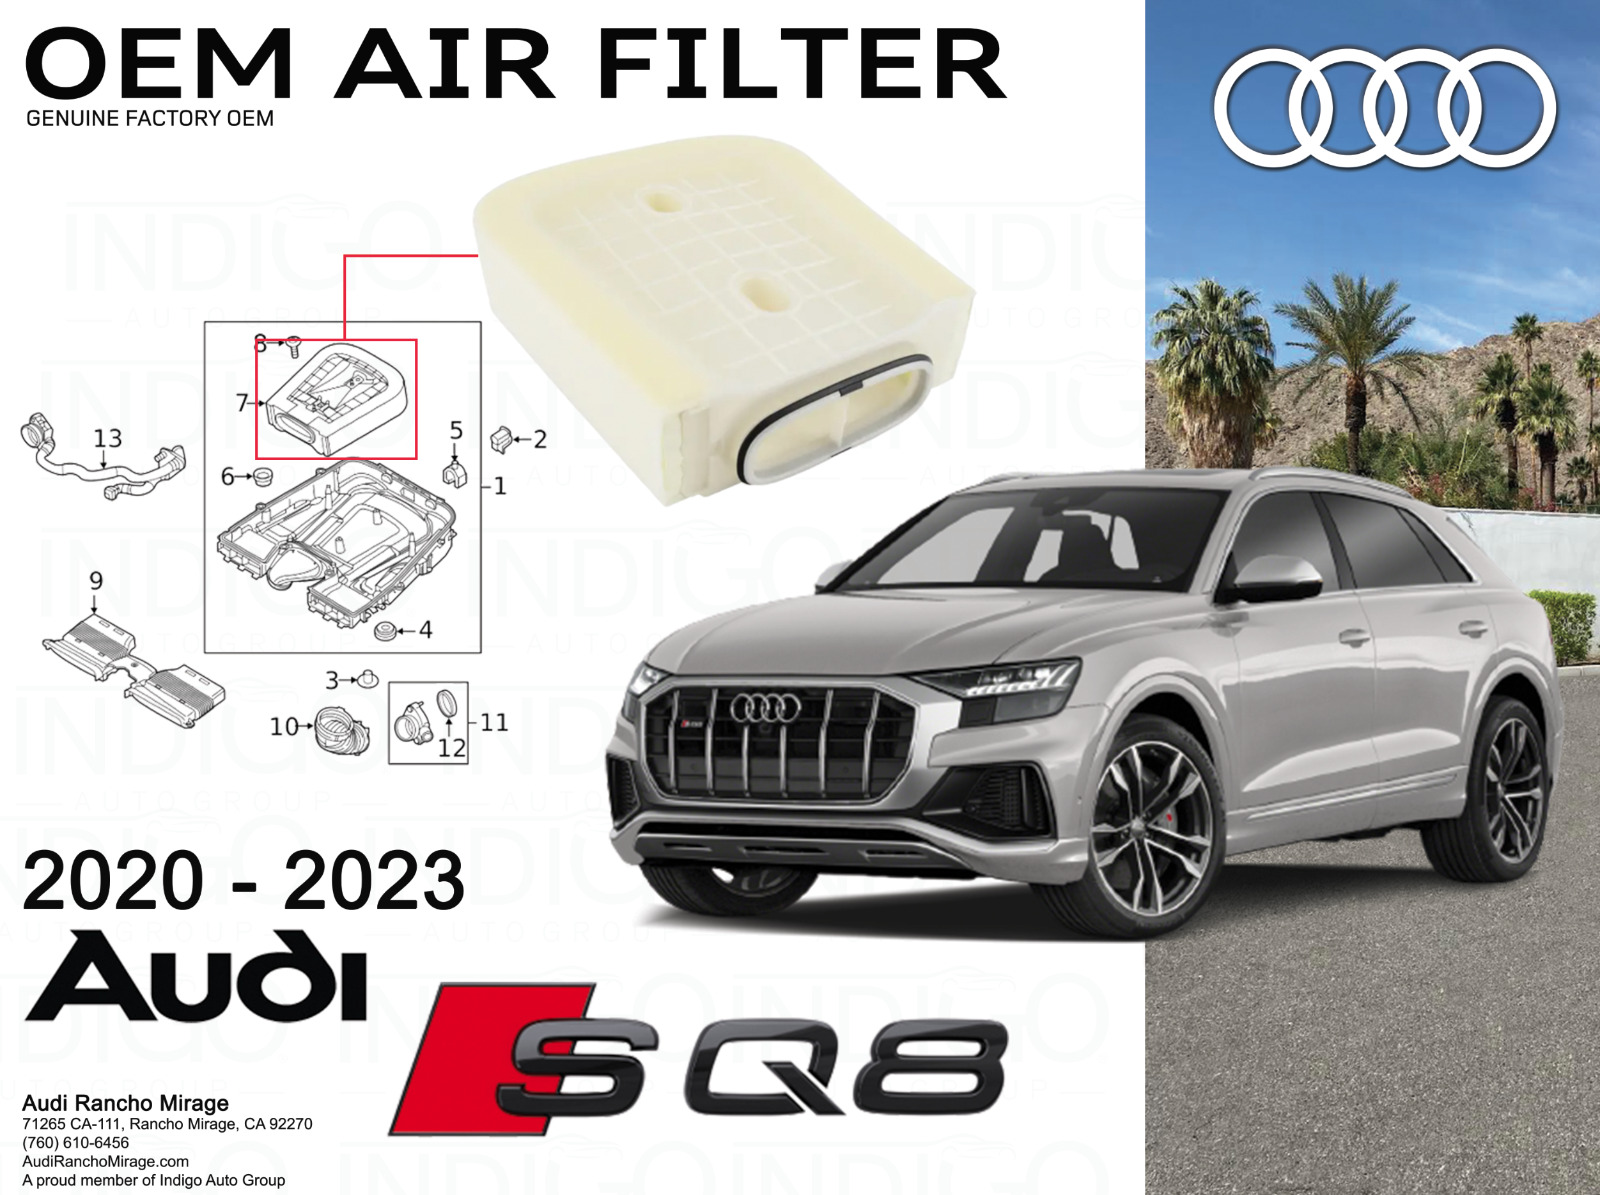 2020-2023 Genuine Audi SQ8 Factory OEM Air Filter 4M0-133-843-G